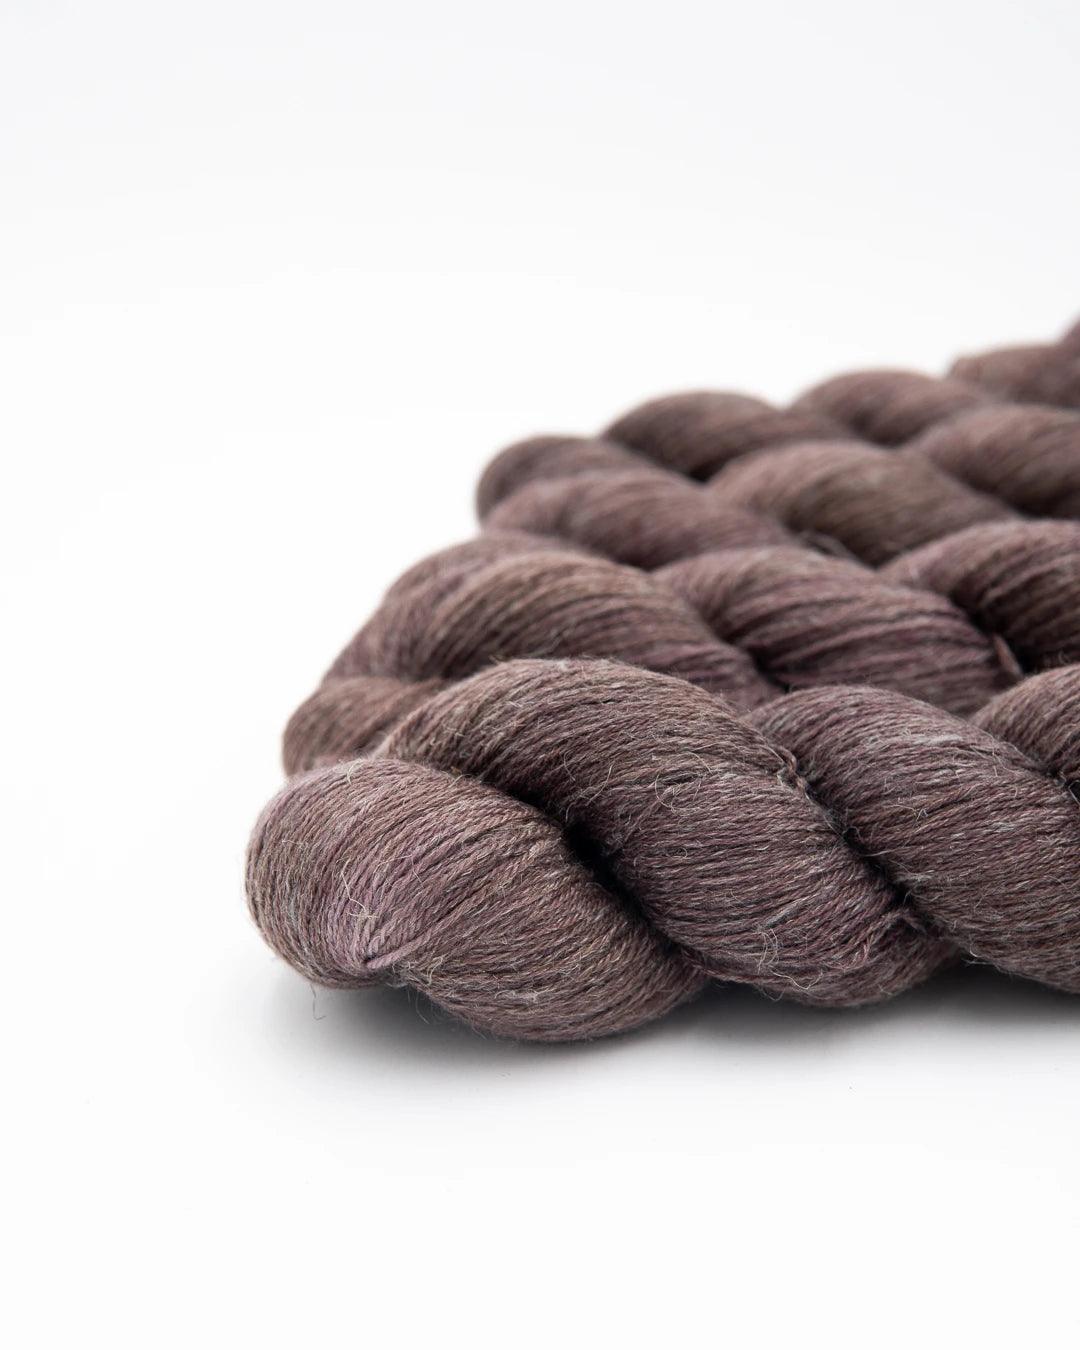 Majyo colorway of organic wool & linen fingering yarn. It's a neutral purple.